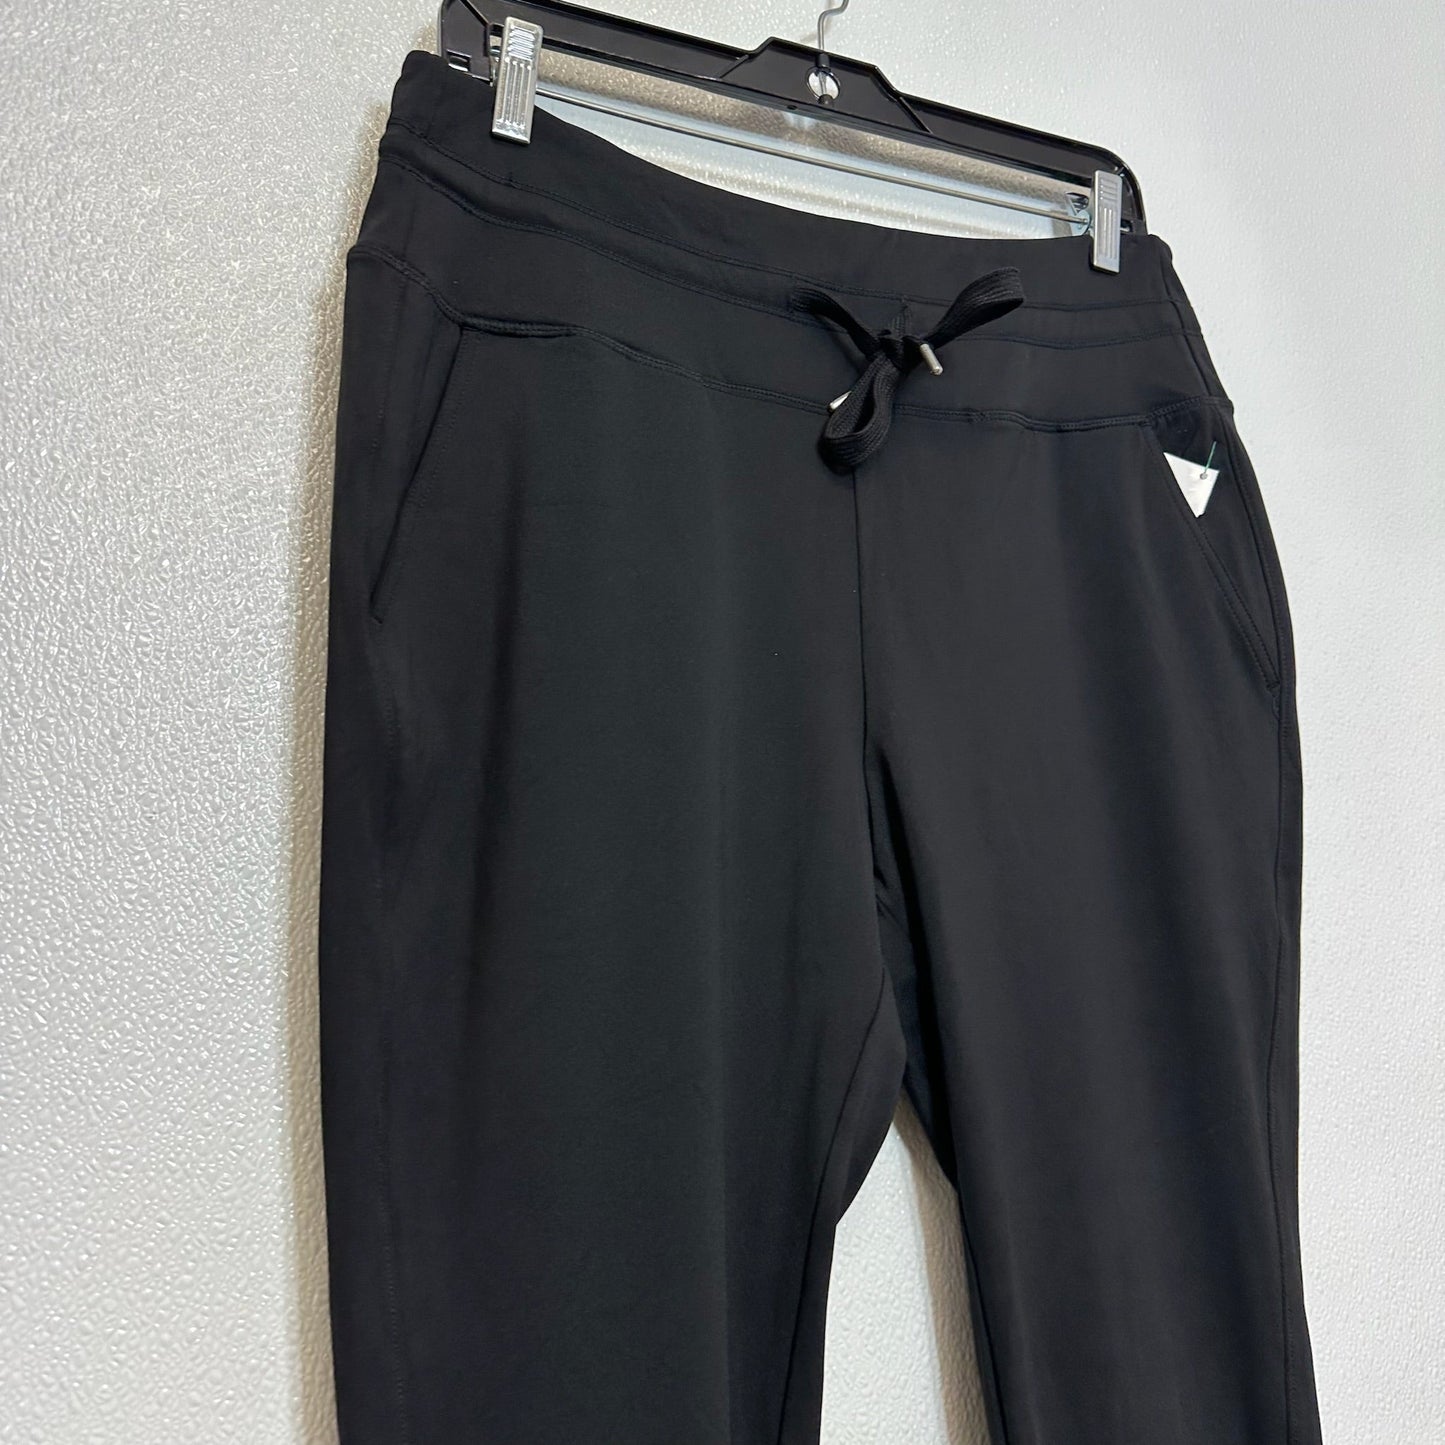 Black Athletic Pants Clothes Mentor, Size L